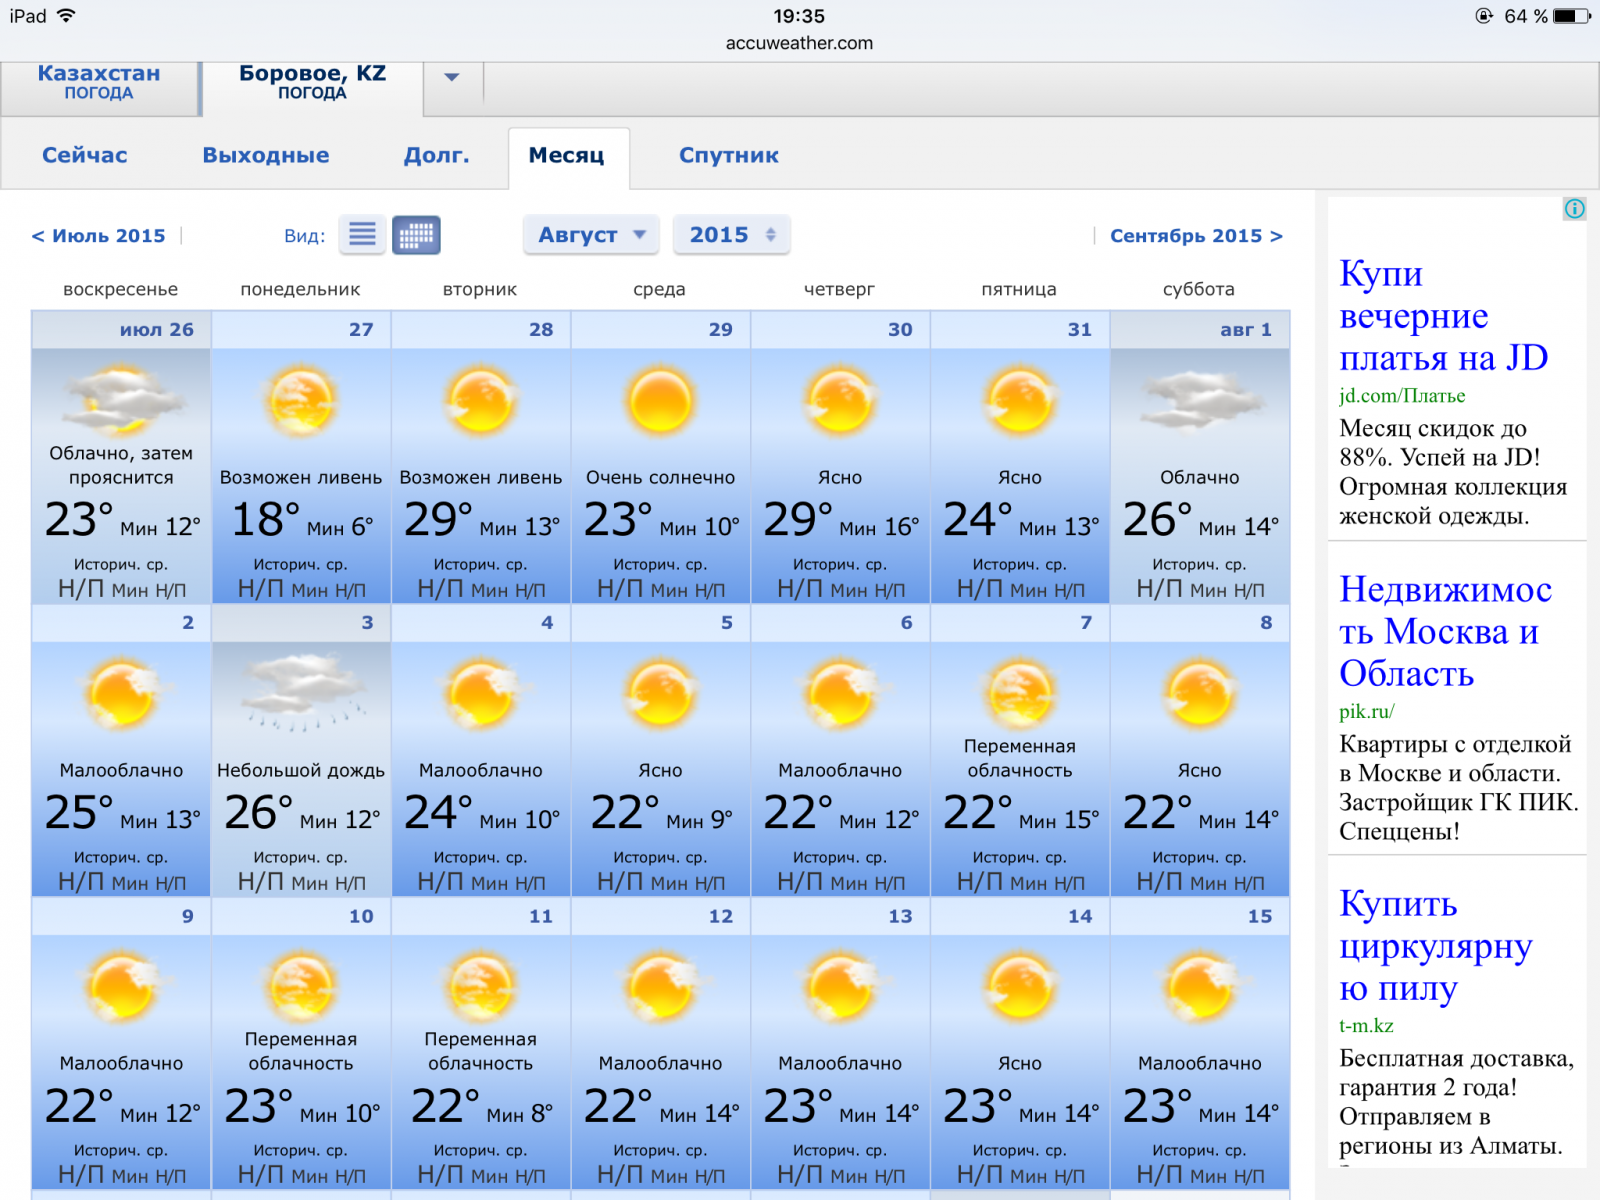 Прогноз погоды. Казахстан погода. Погода в Казахстане сегодня. Прогноз погоды на неделю. Погода темиртау 10 дней точный прогноз